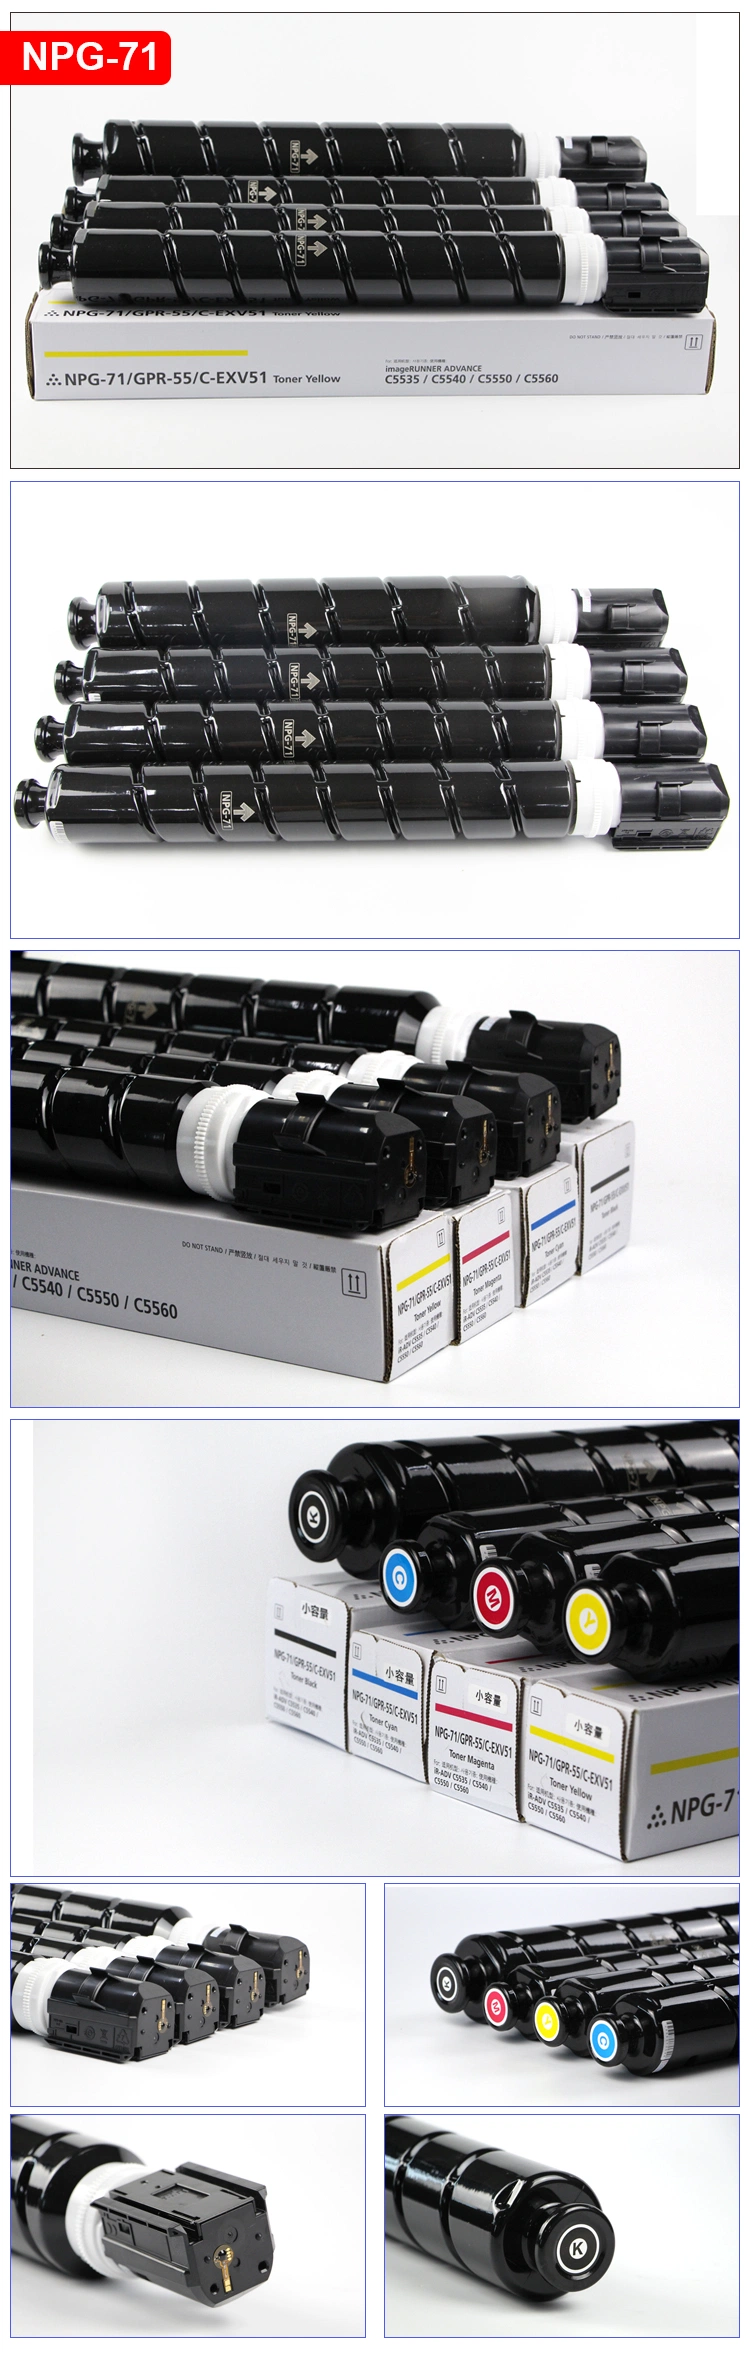 Canon Printer Toner Powder G71 Copier Cartridge Toner Npg71 Gpr55 C-Exv51 for Canon IR C5535 C5540 C5550 C5560 5535 5540 5550